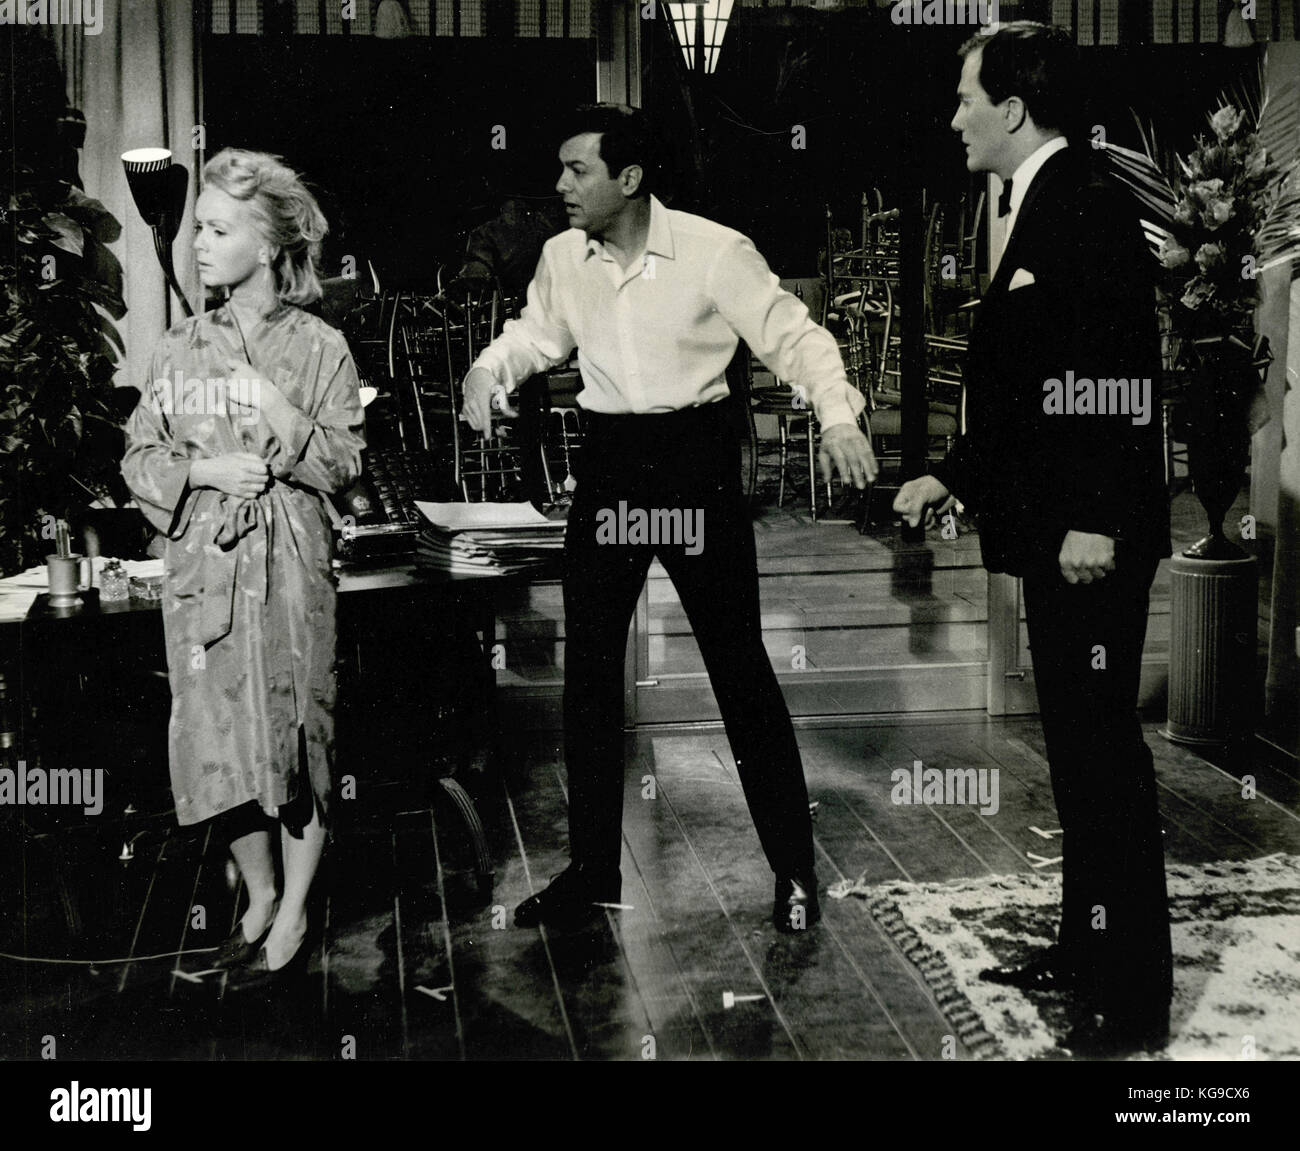 Acteurs Debbie Reynolds, Tony Curtis, et Pat Boone dans le film au revoir Charlie, 1964 Banque D'Images